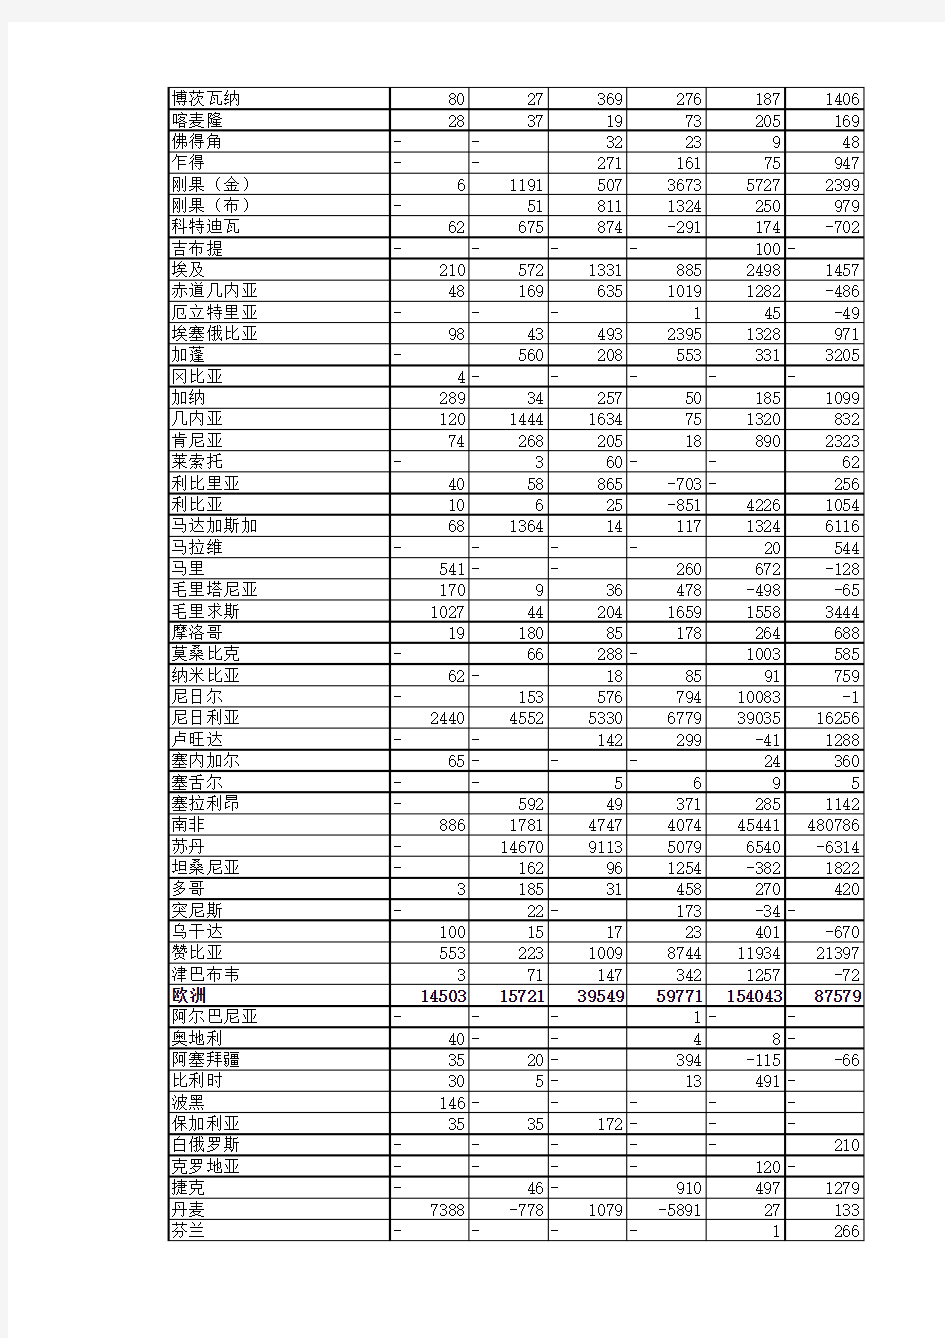 中国对外直接投资流量和存量(2003-2008)-分国家地区详细数据